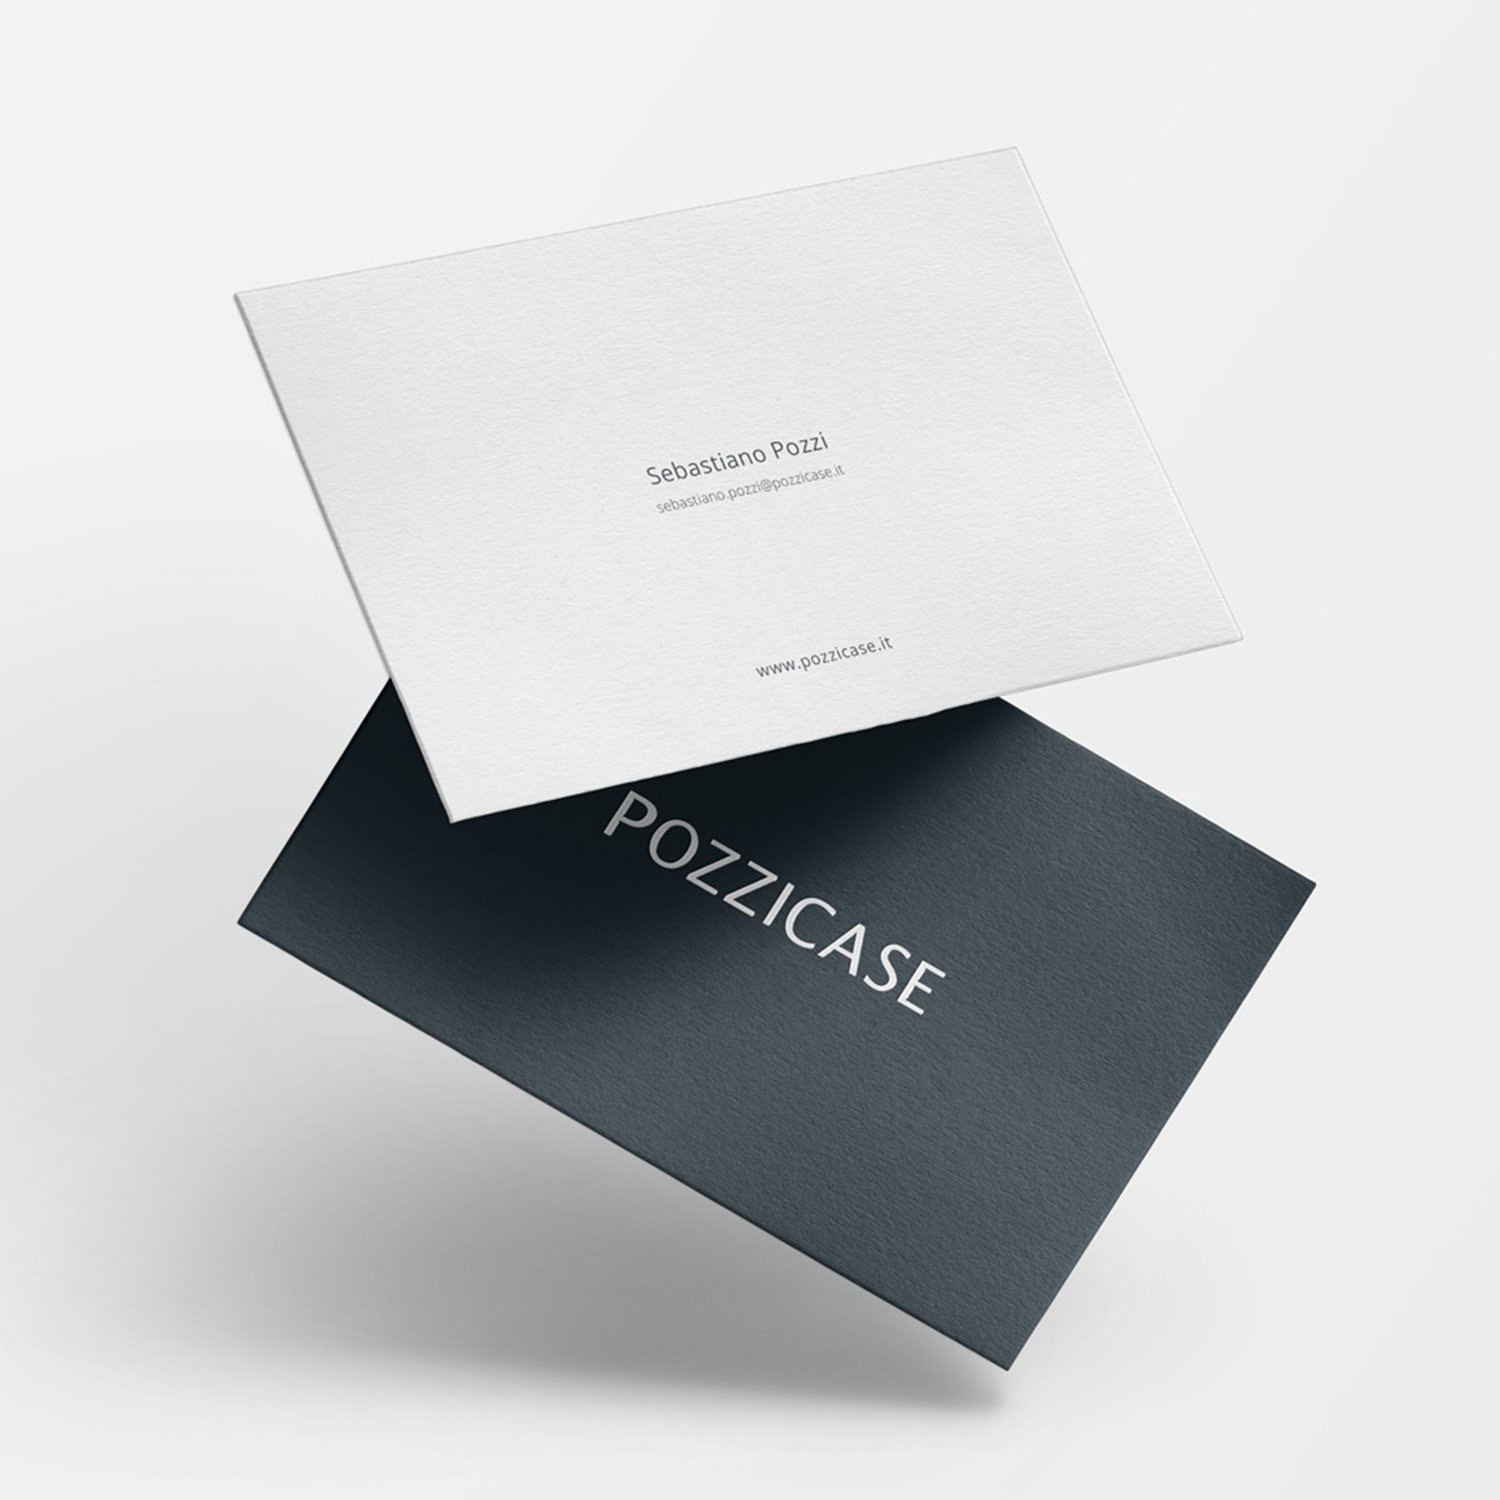 behagen-Branding-and-Marketing-for-Real-Estate-Pozzi Case-Cover.jpg